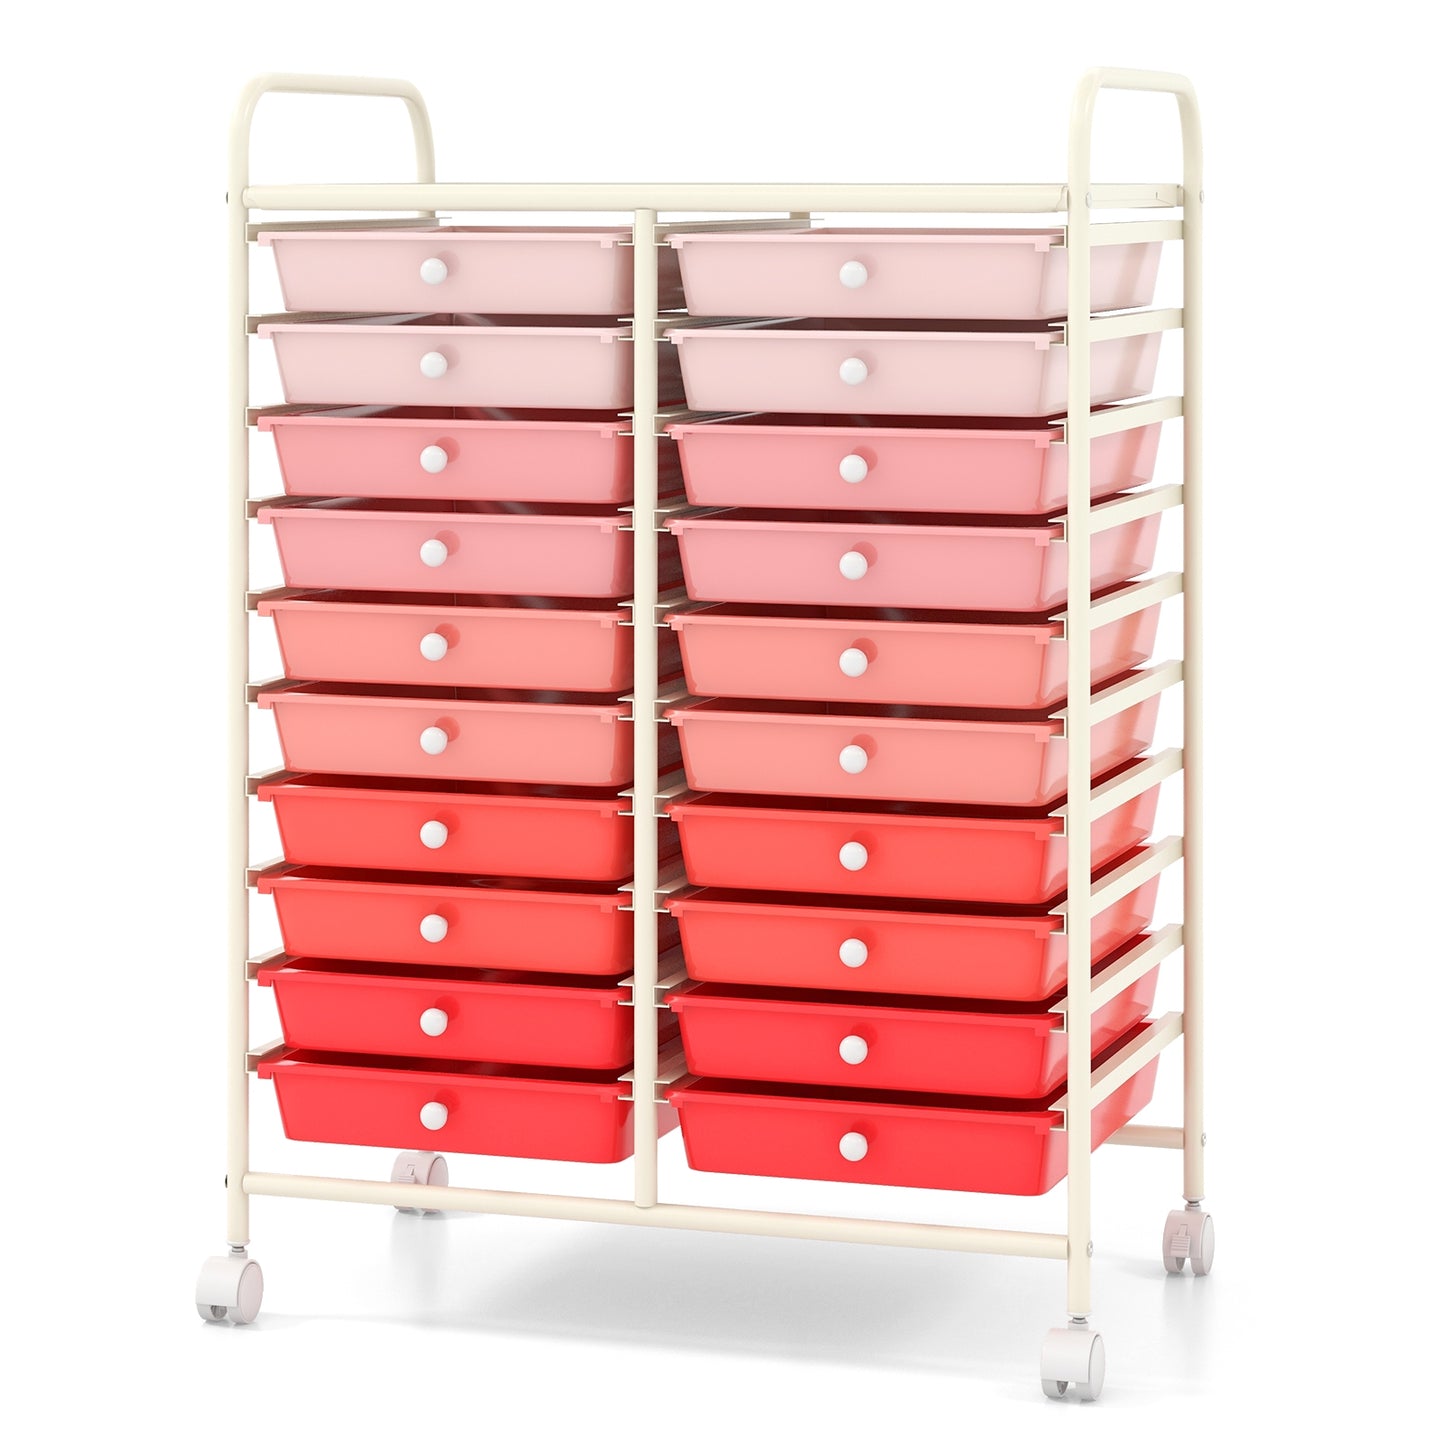 20 Drawers Rolling Storage Cart Studio Organizer-Pink